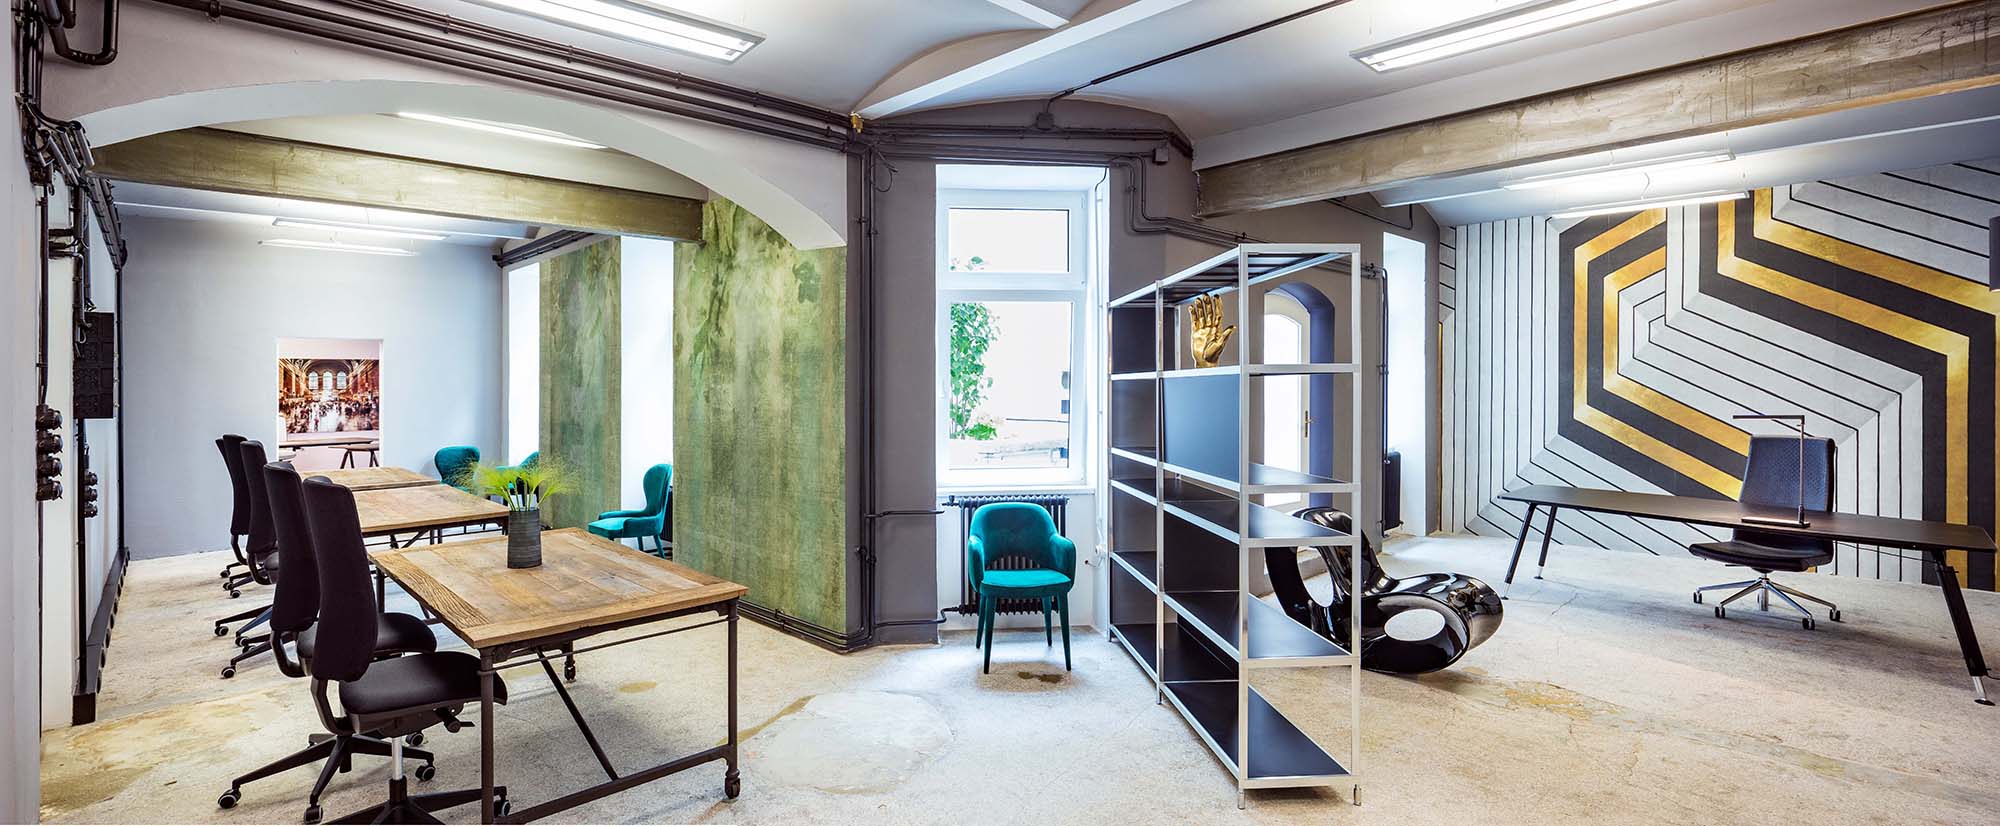 Tapeten, Farben und außergewöhnliche Möbel, wie der schwarze Hochglanzsessel Void, machen aus dieser Souterrain-Fläche ein junges, urbanes Office.